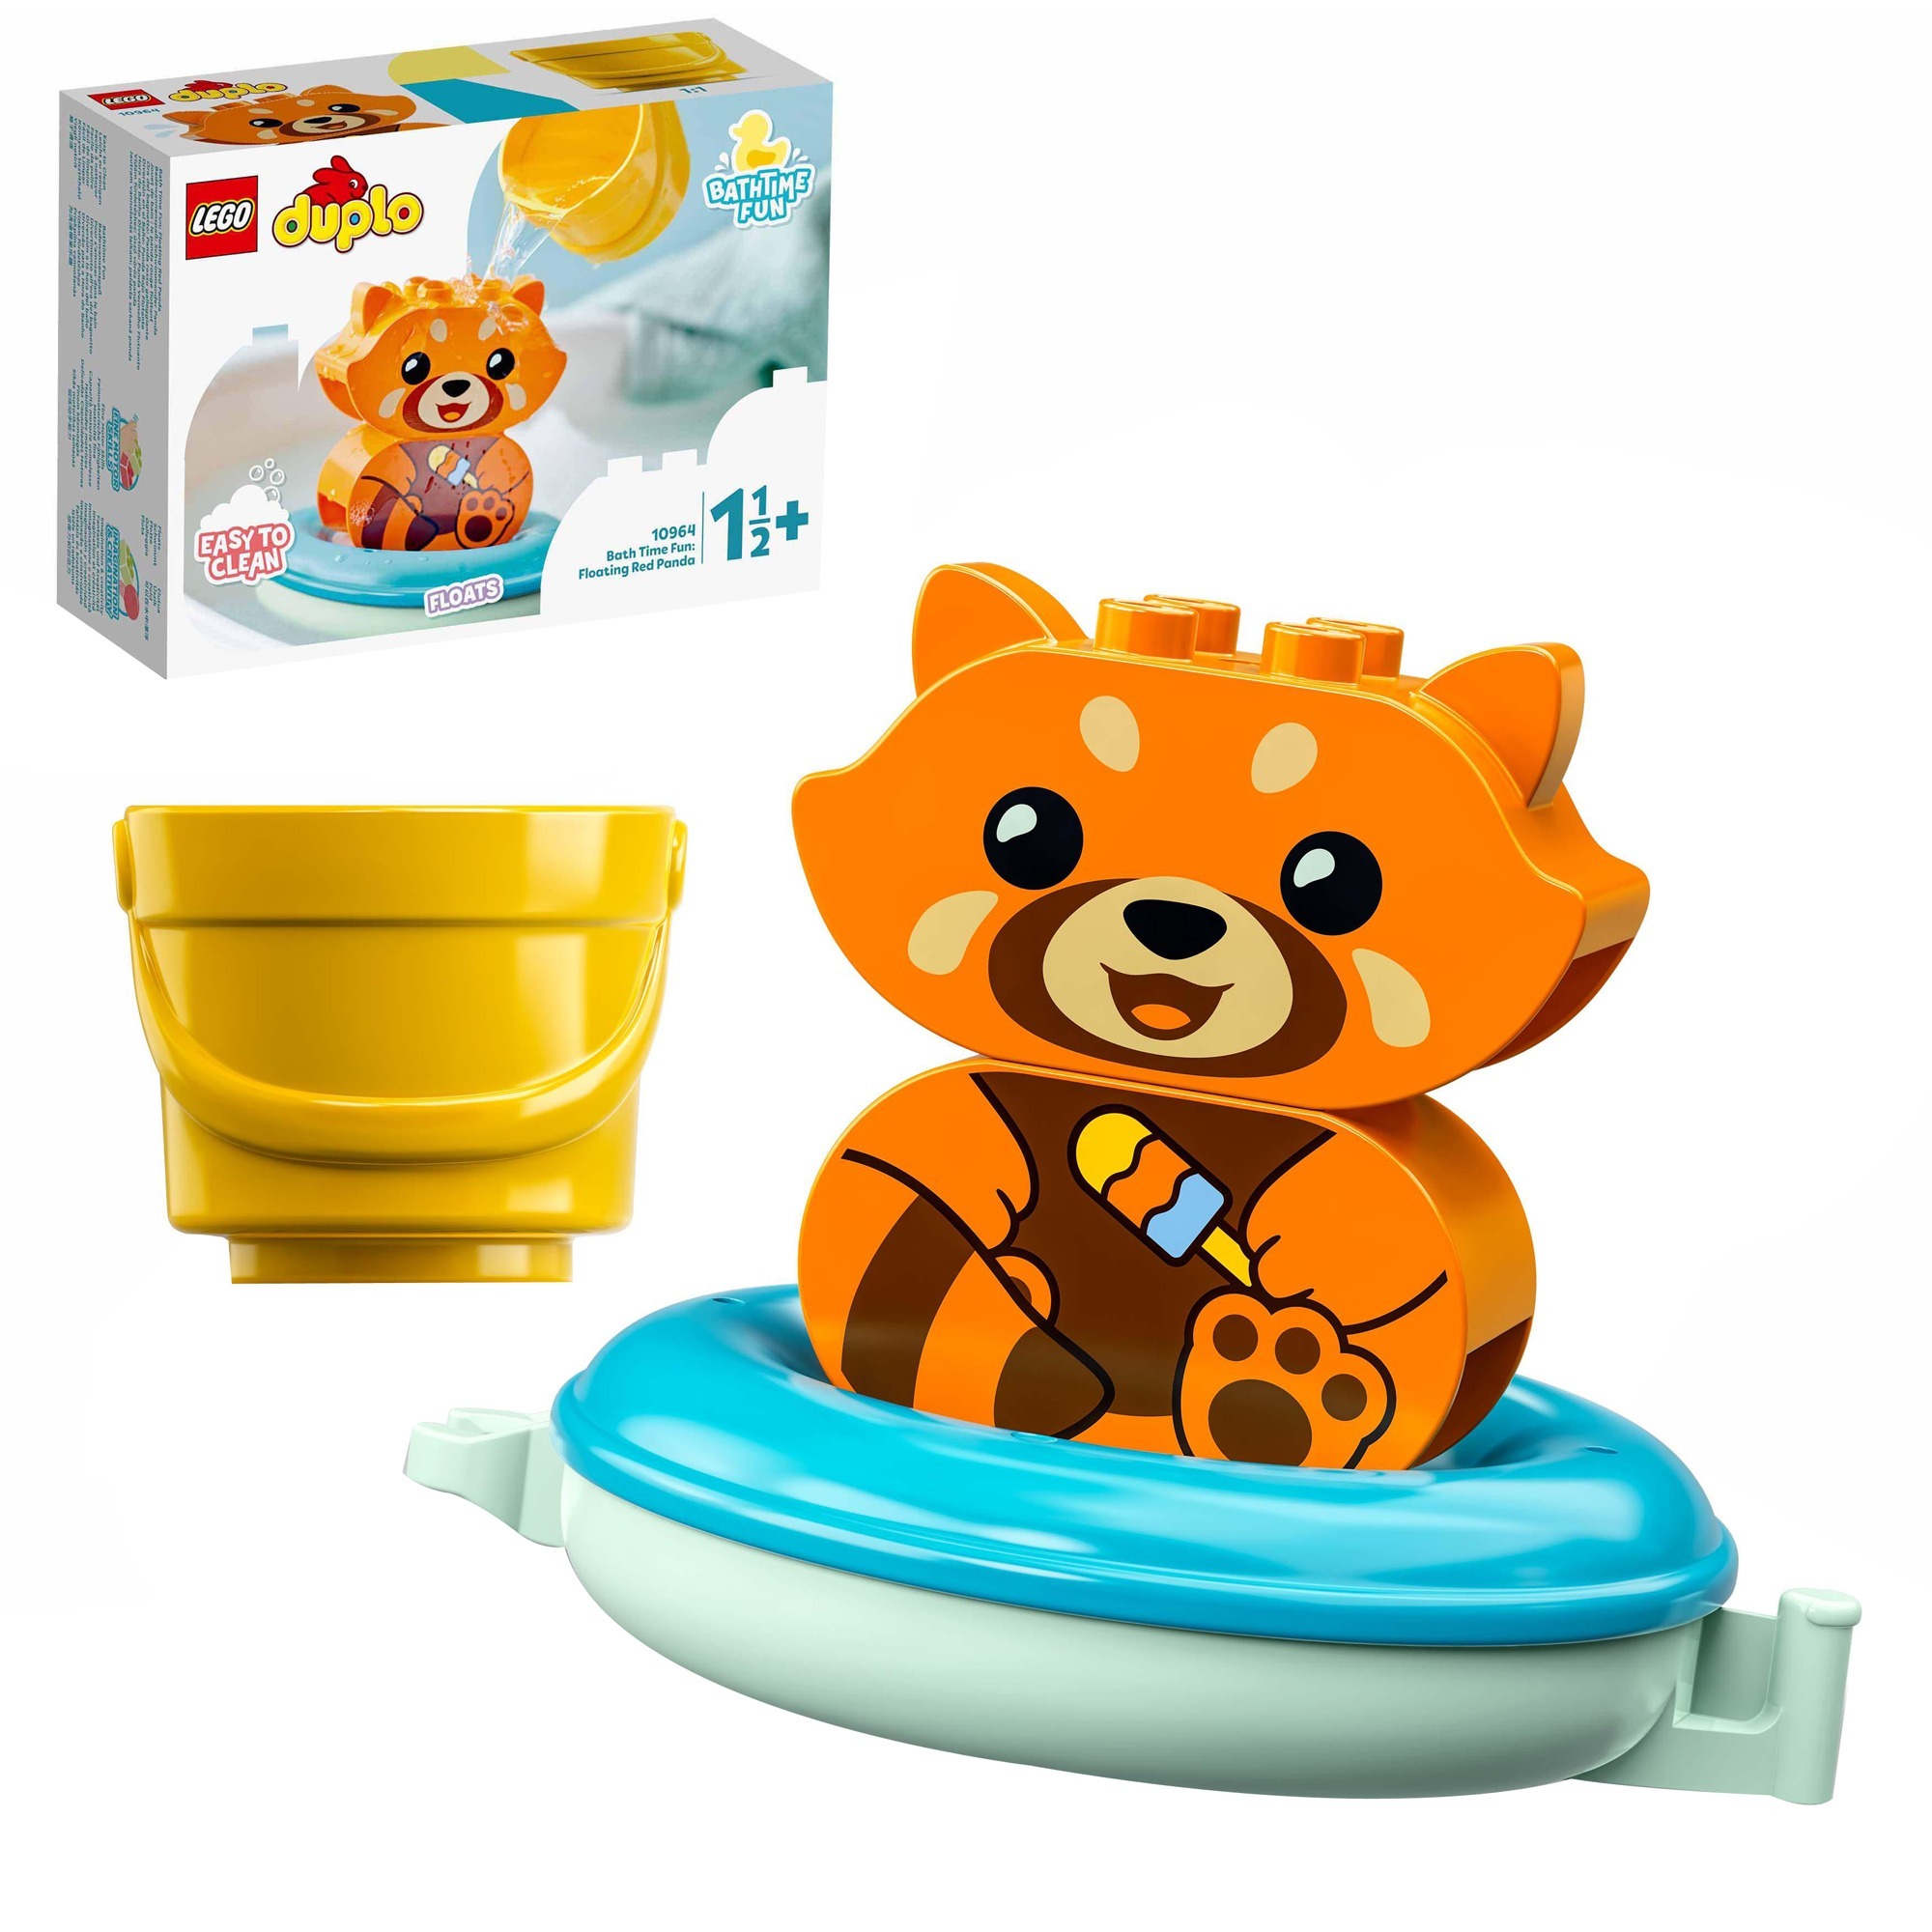 Image of Alternate - 10964 DUPLO Badewannenspaß: Schwimmender Panda, Konstruktionsspielzeug online einkaufen bei Alternate